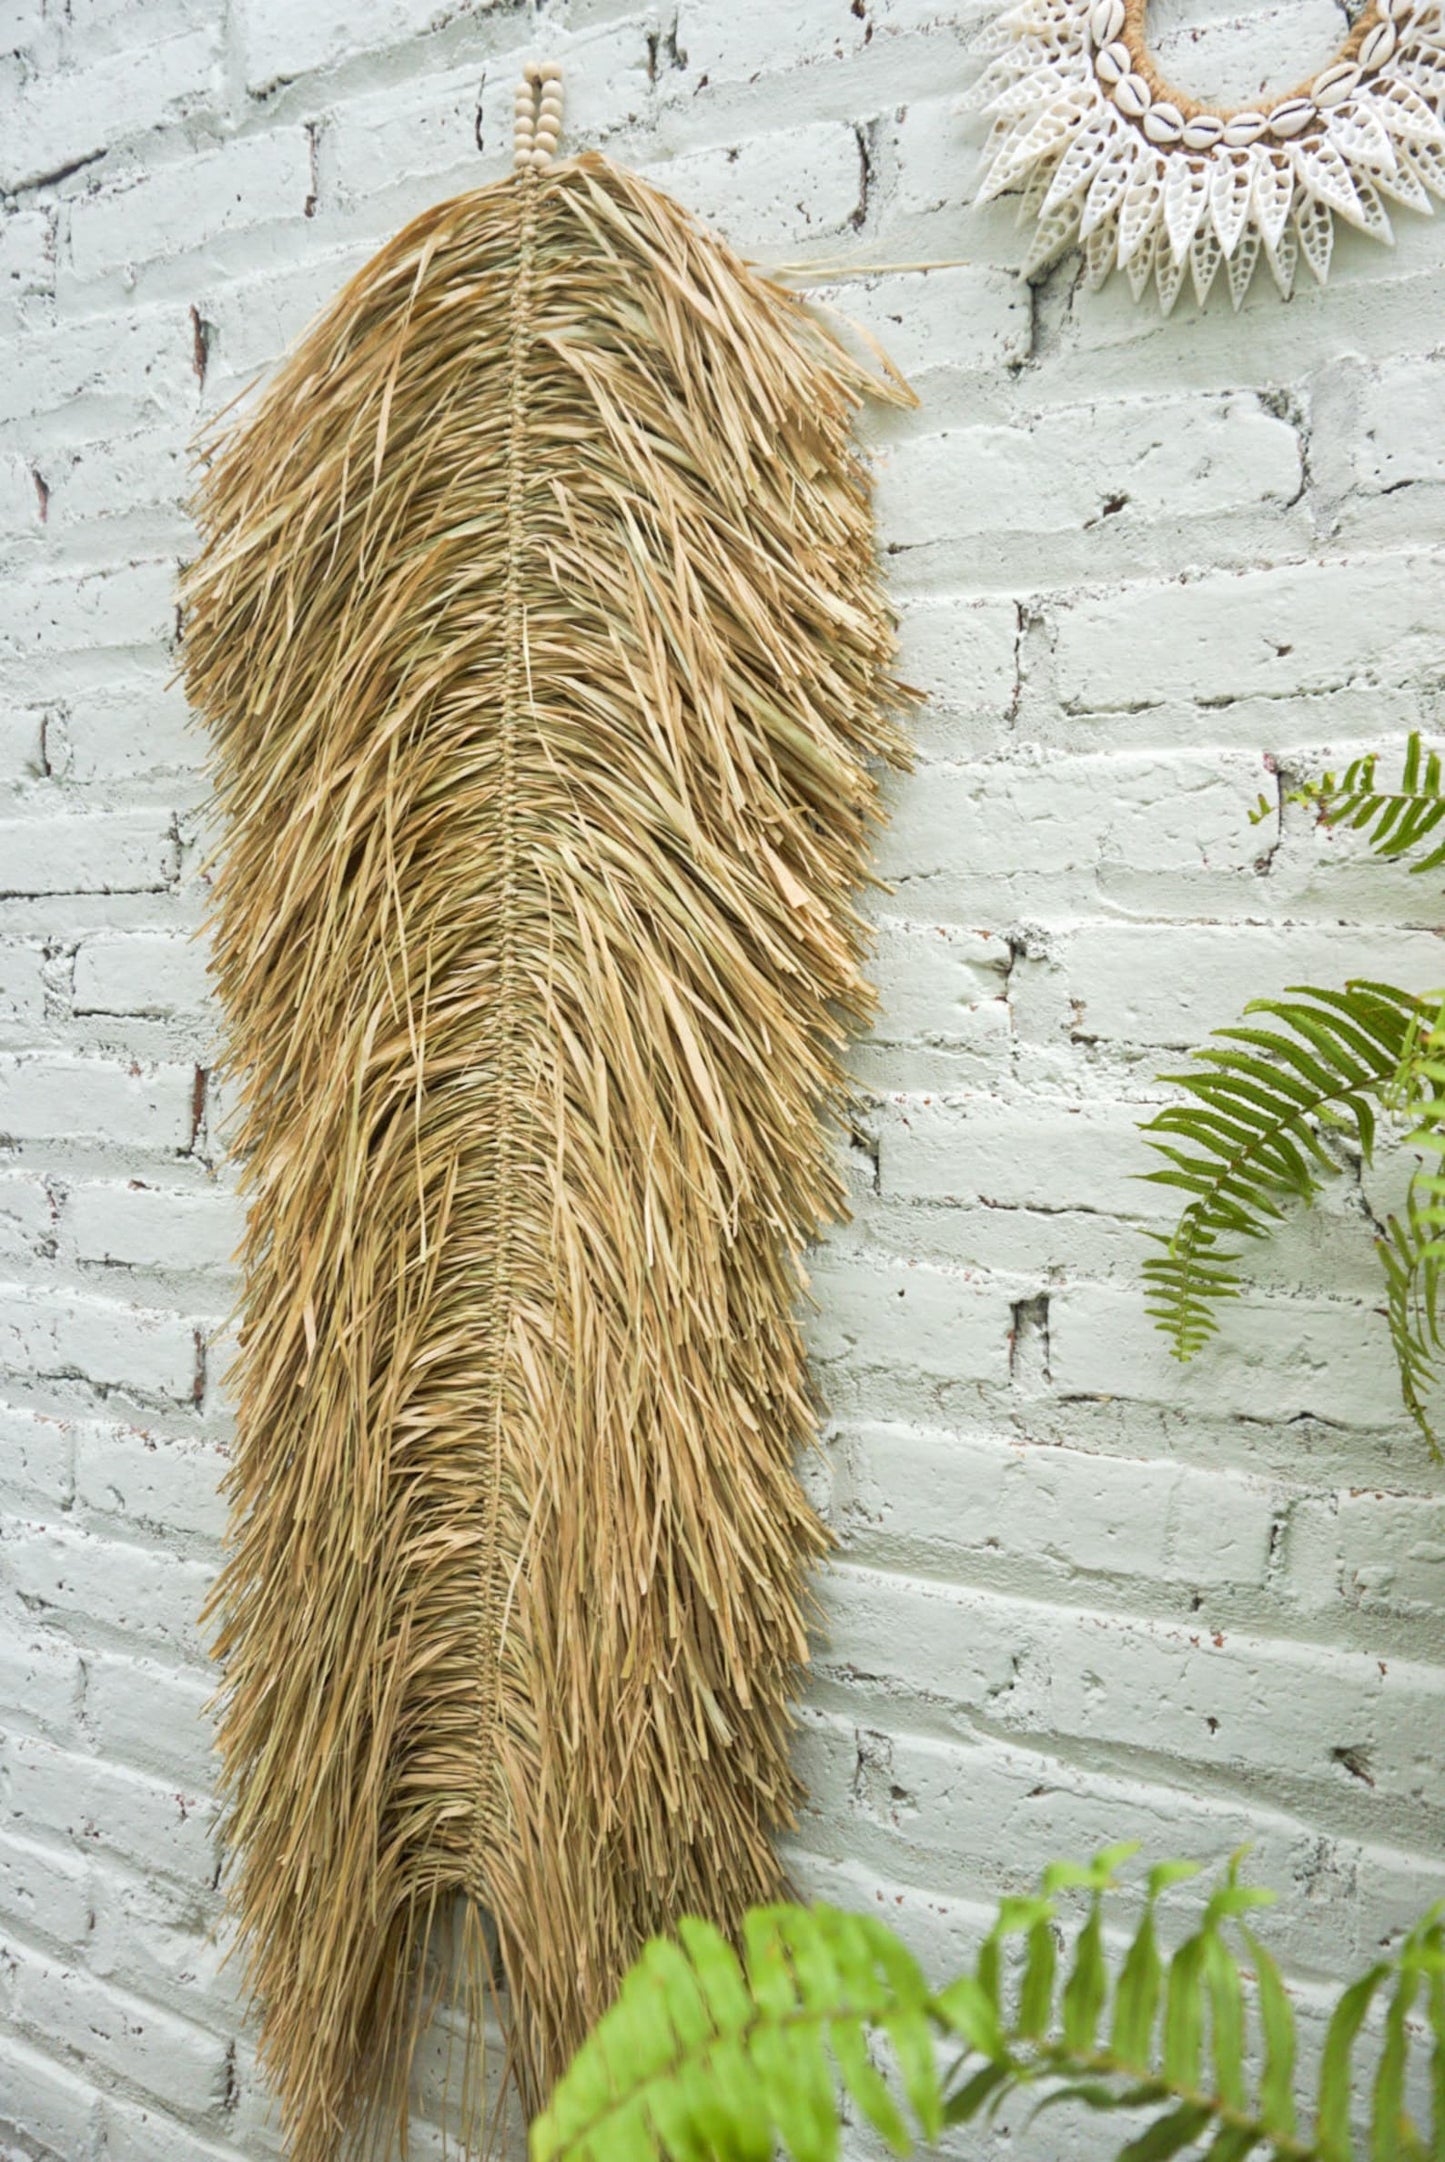 Bali Art seagrass natural wall hanging